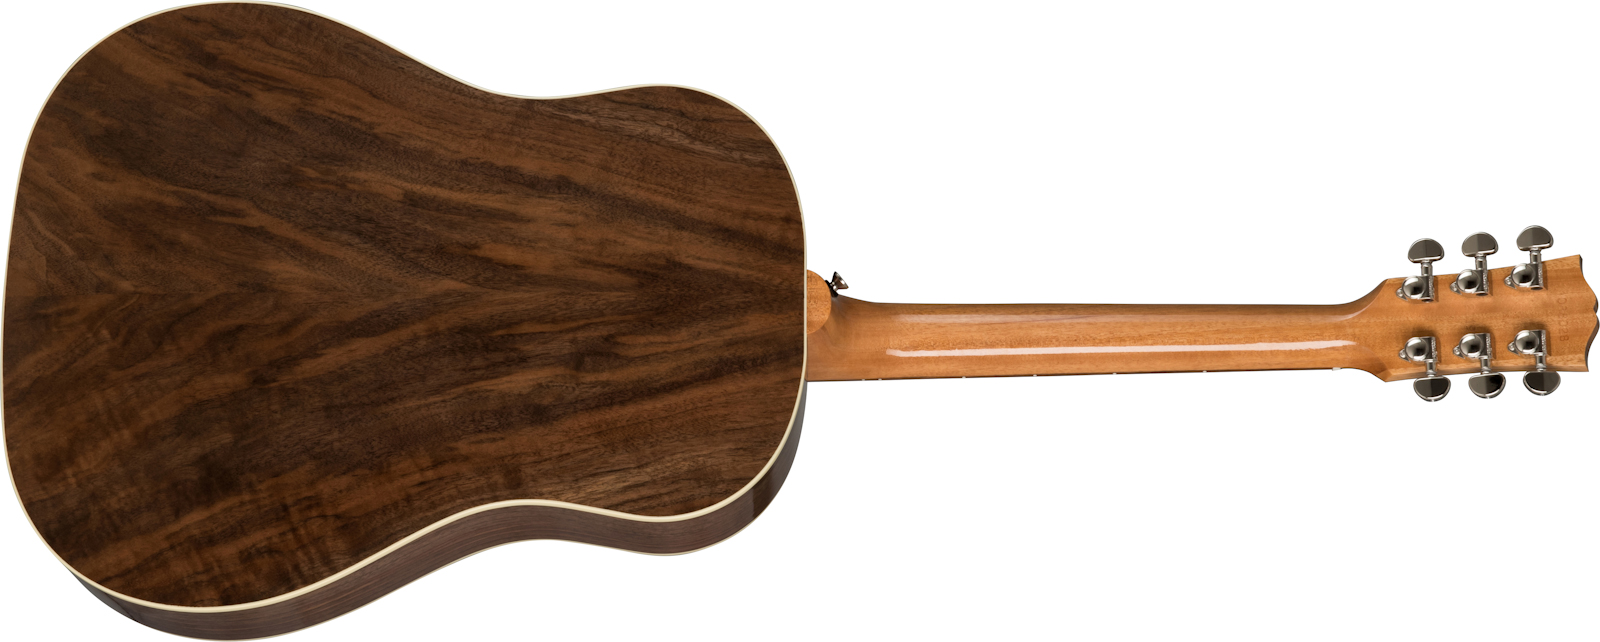 Gibson J-45 Studio Walnut Modern Dreadnought Epicea Noyer Noy - Antique Natural - Elektroakustische Gitarre - Variation 2